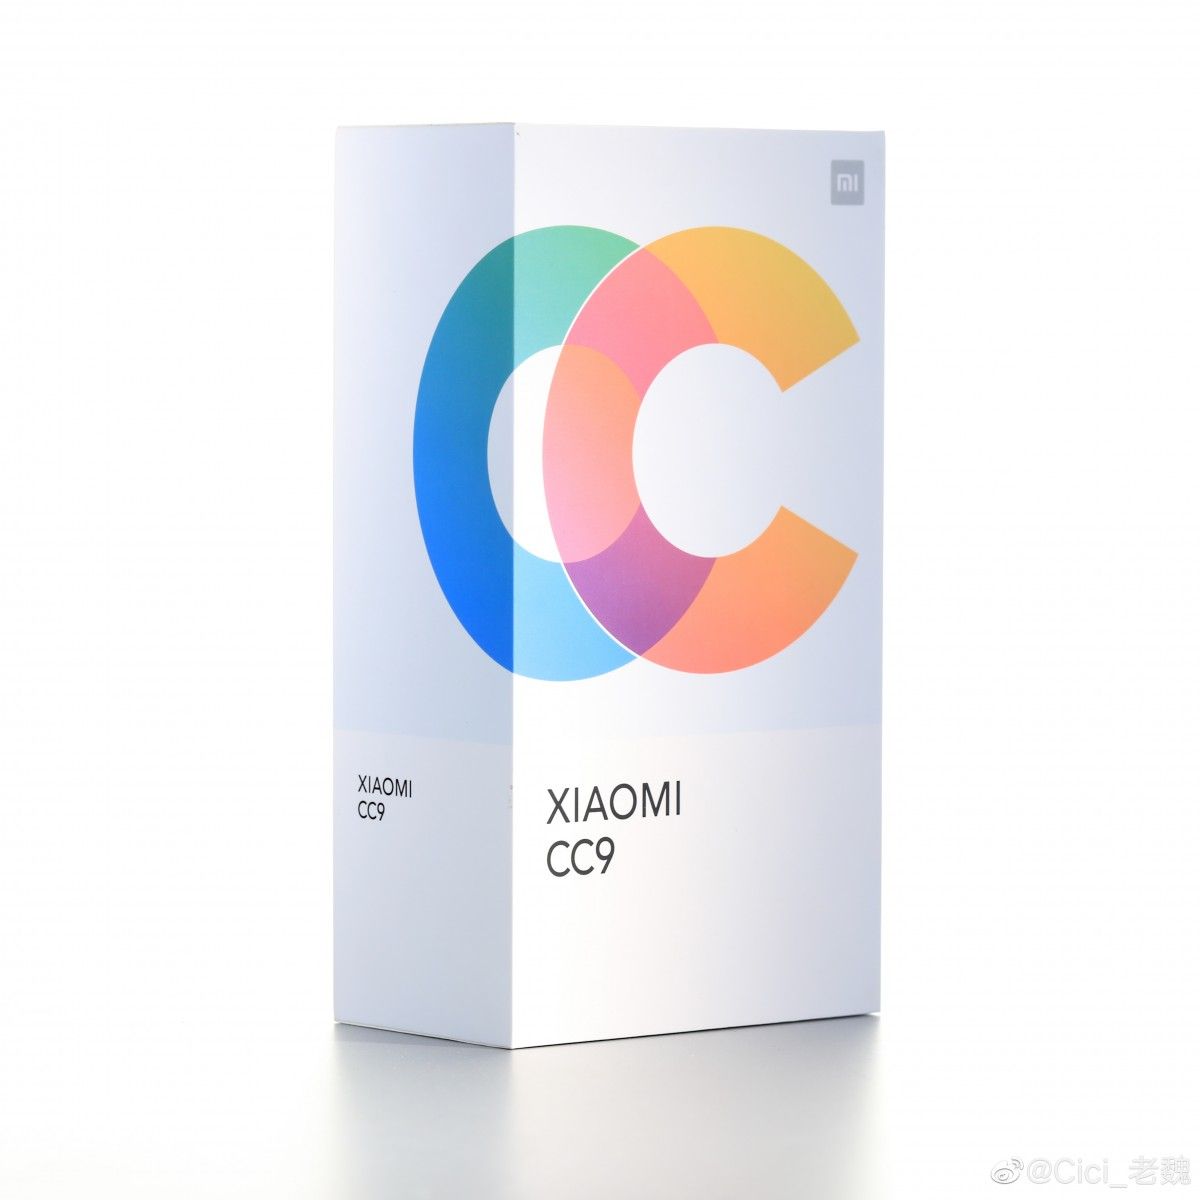 หลุดชุดใหญ่ Xiaomi Mi CC9 ทั้งกล่องและตัวเครื่องสีขาว White Lovers แถมมีเซ็ตภาพจากกล้องเซลฟี่ 32MP อีกเพียบ